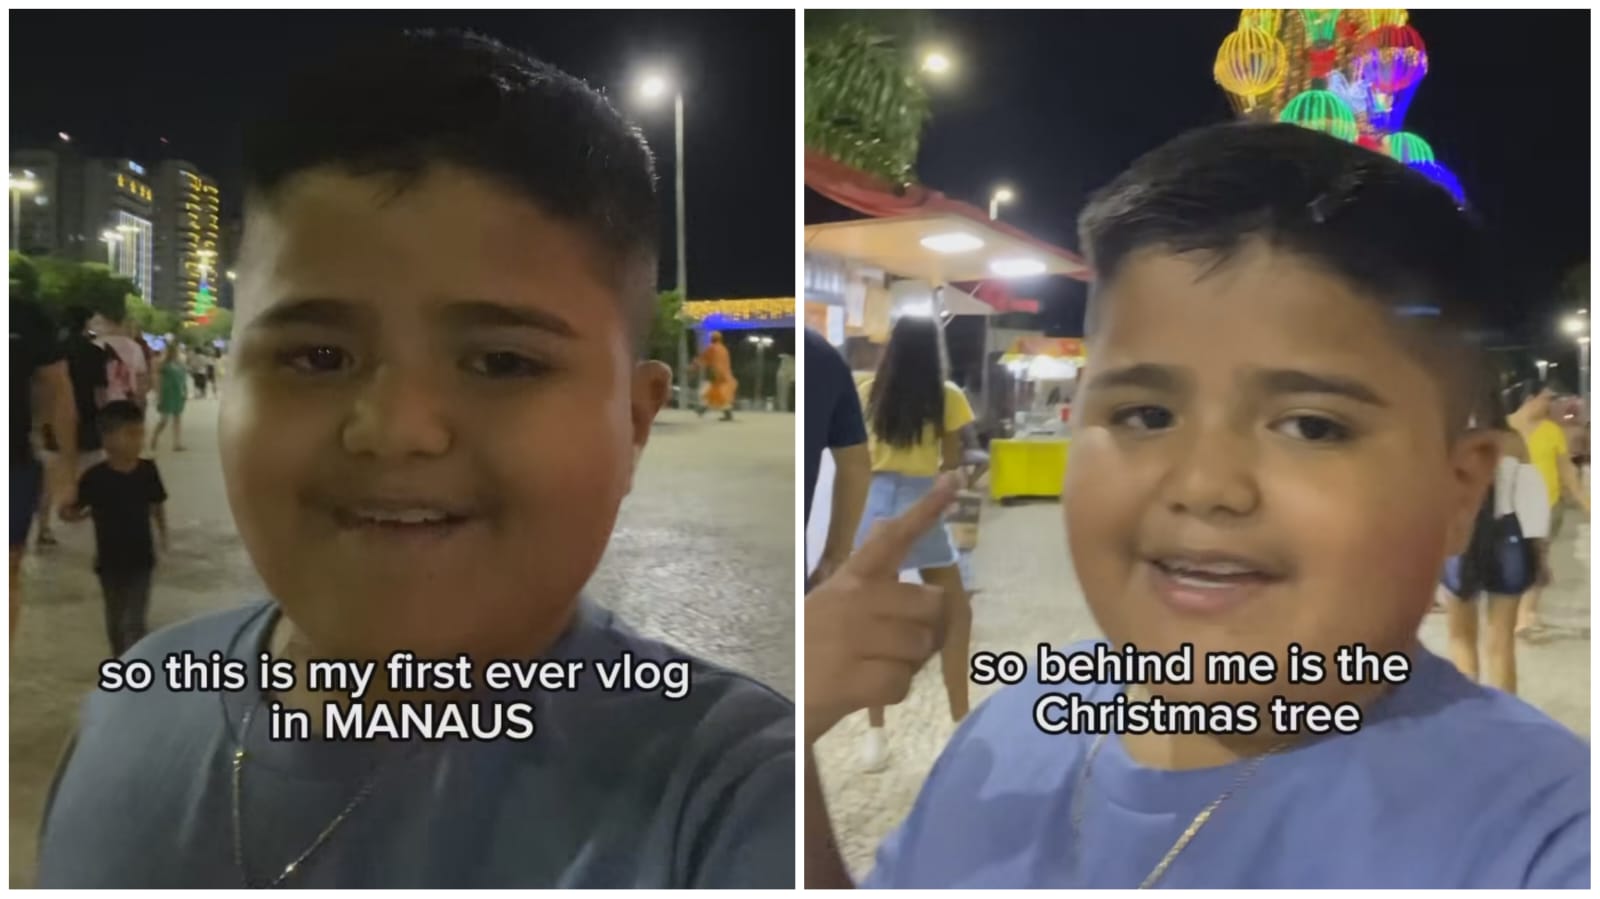 Luan fez um vlog em inglês apresentando a decoração natalina em Manaus - Foto: Reprodução/Instagram/@eu_lunatico